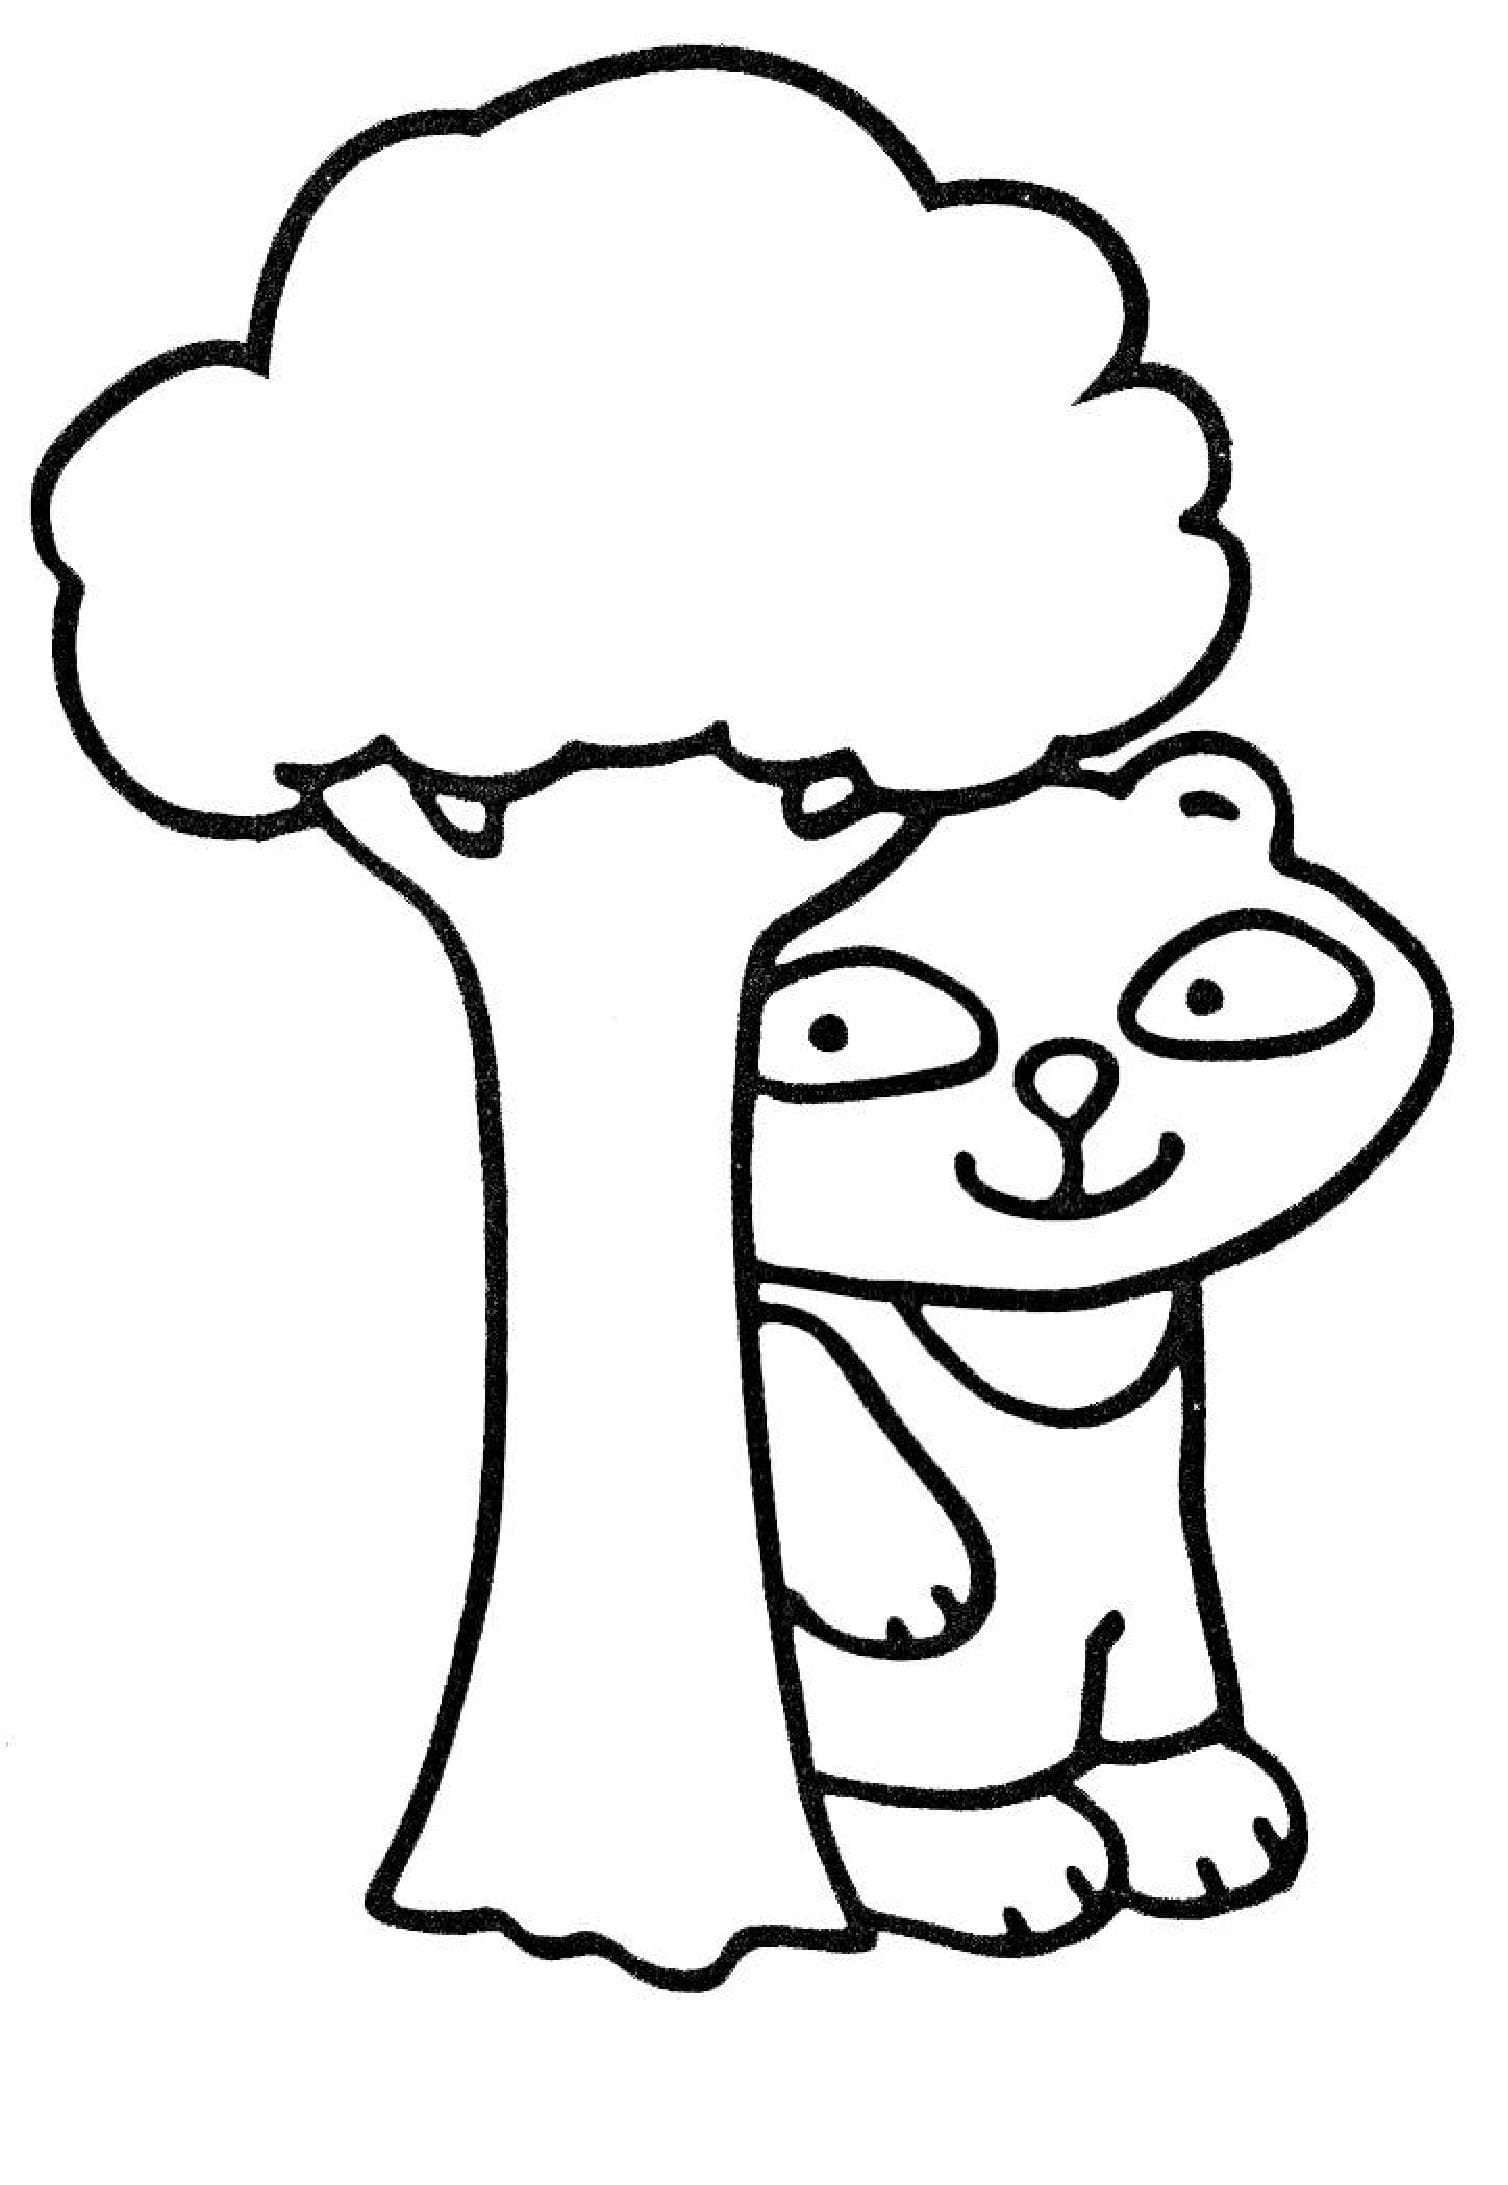 Дерево и мультяшный персонаж